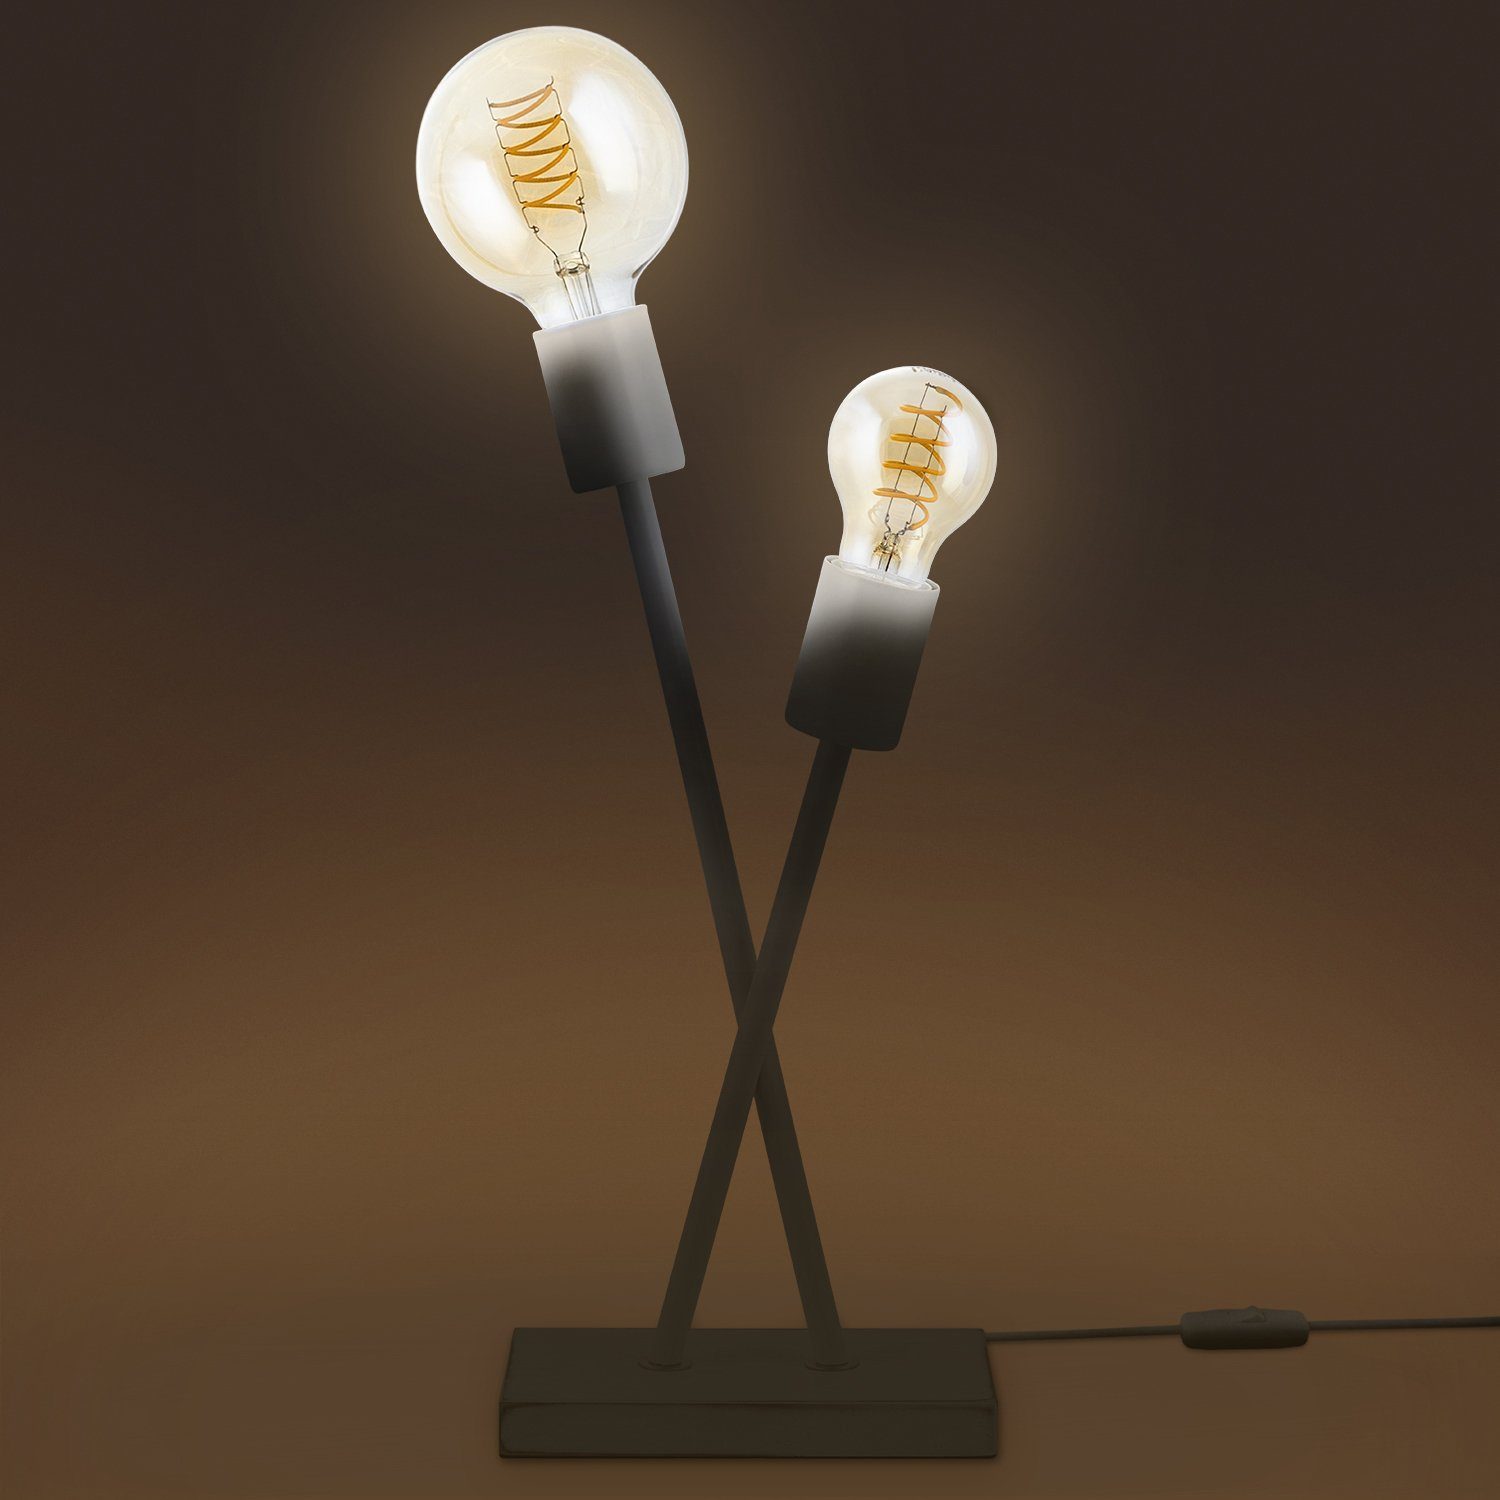 Wohnzimmer E27 Stehlampe ohne Paco Industrial Lampe Home LED IKS, Vintage Retro Design Tischleuchte Leuchtmittel,